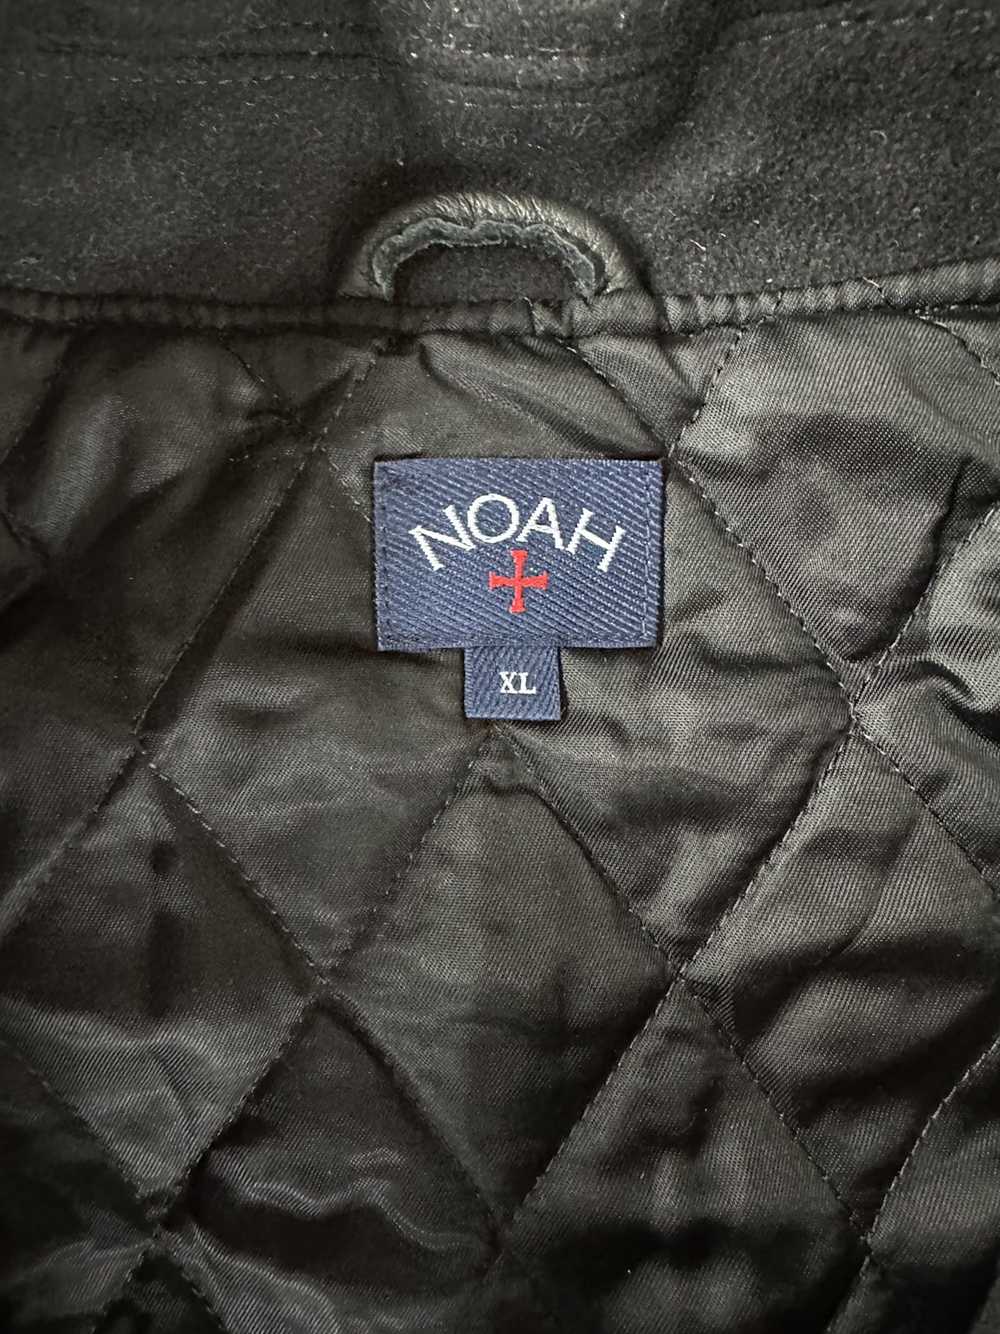 Noah Noah Depeche Mode violator letterman jacket - image 3